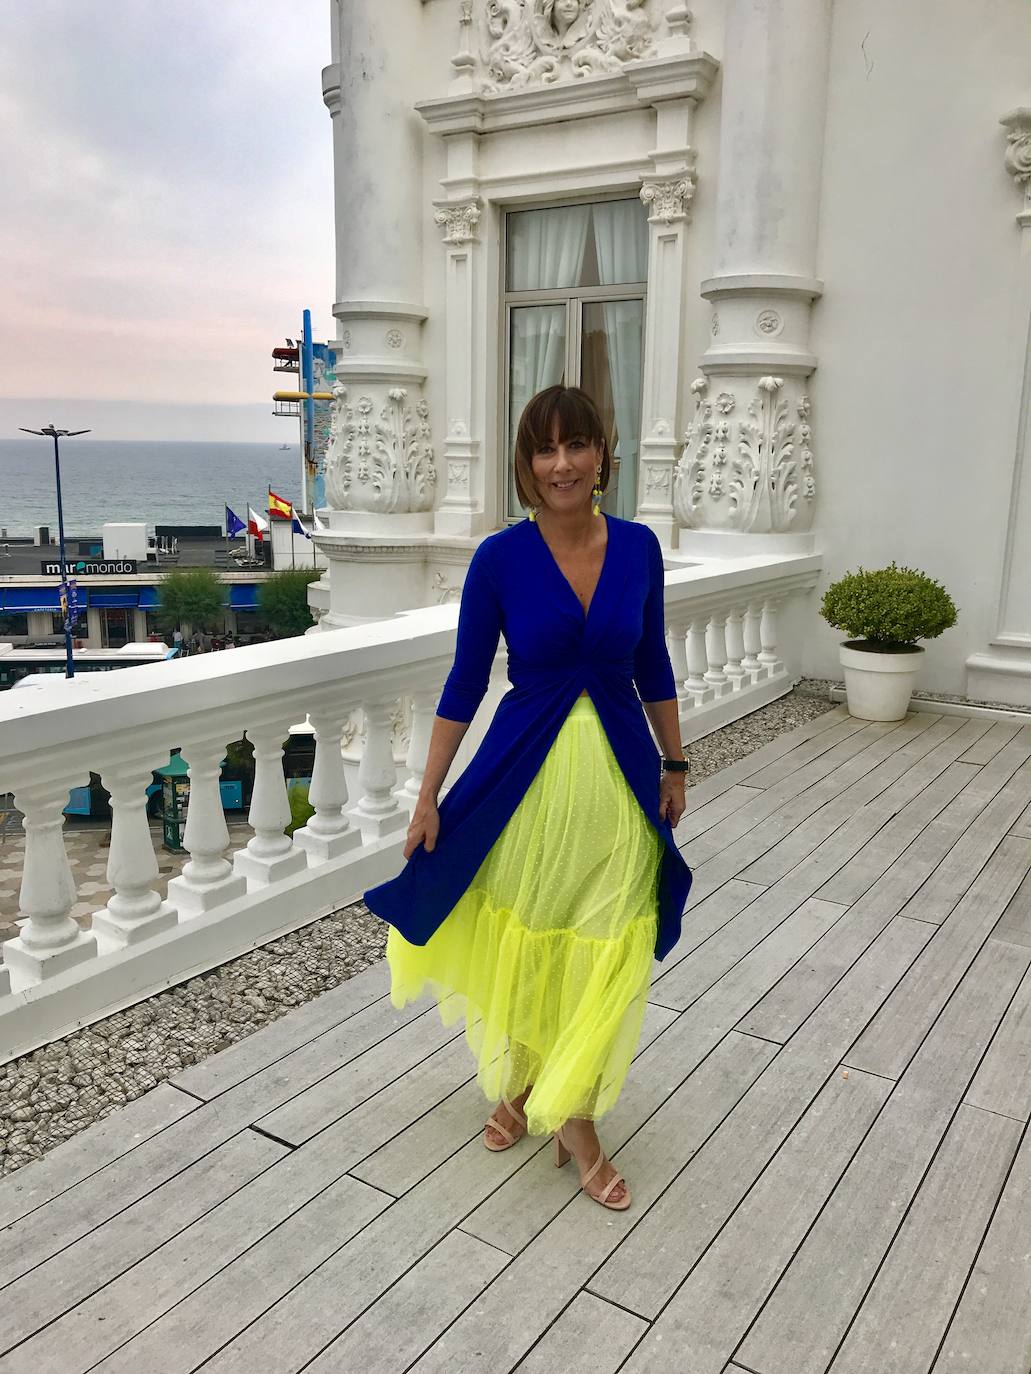 Estilismo con una preciosa falda de tul de plumetti en un tono amarillo vibrante. Combinada con una túnica en azulón haciendo contraste.